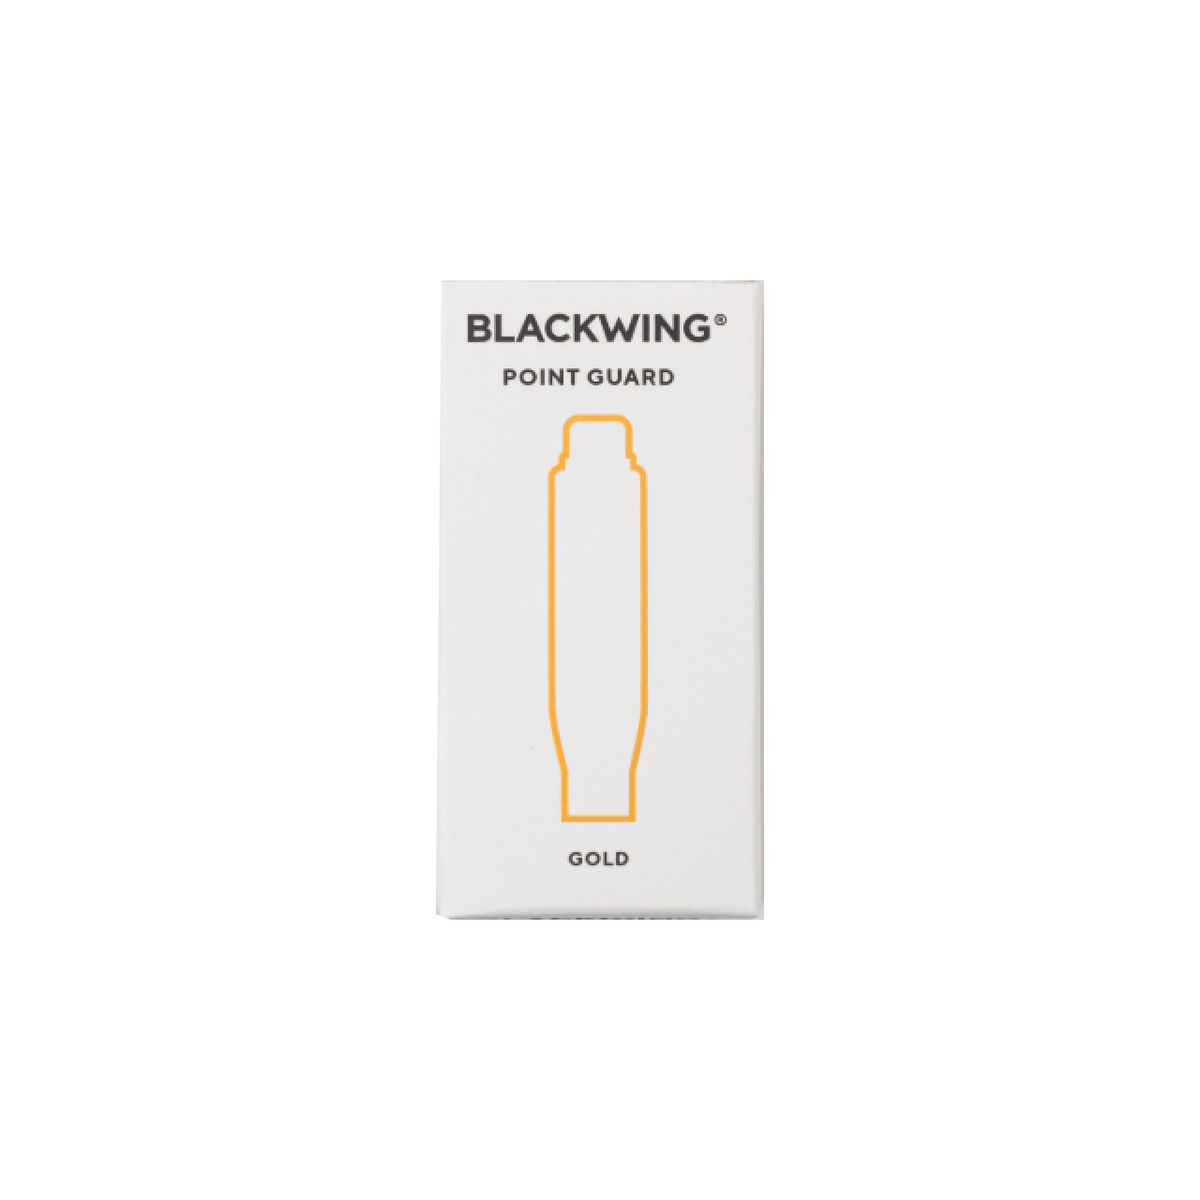 【楽天市場】【BLACKWING/ブラックウィング】鉛筆キャップ 105355 ブラックウィングポイントガード ゴールド ゆうパケット(メール